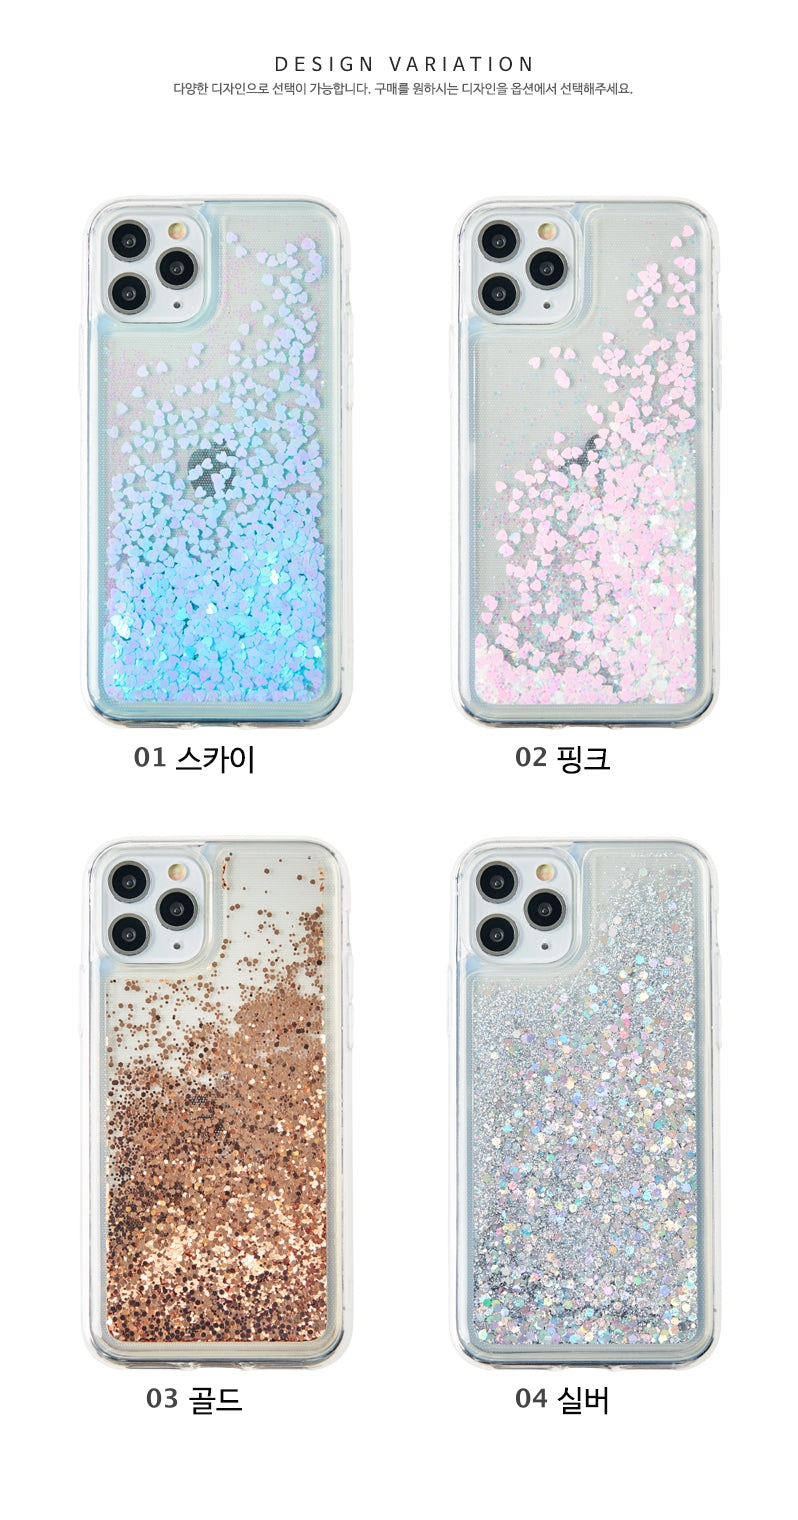 韓國直送 | LS1 流星雨 -流沙動態手機殼 iPhone / Samsung Galaxy